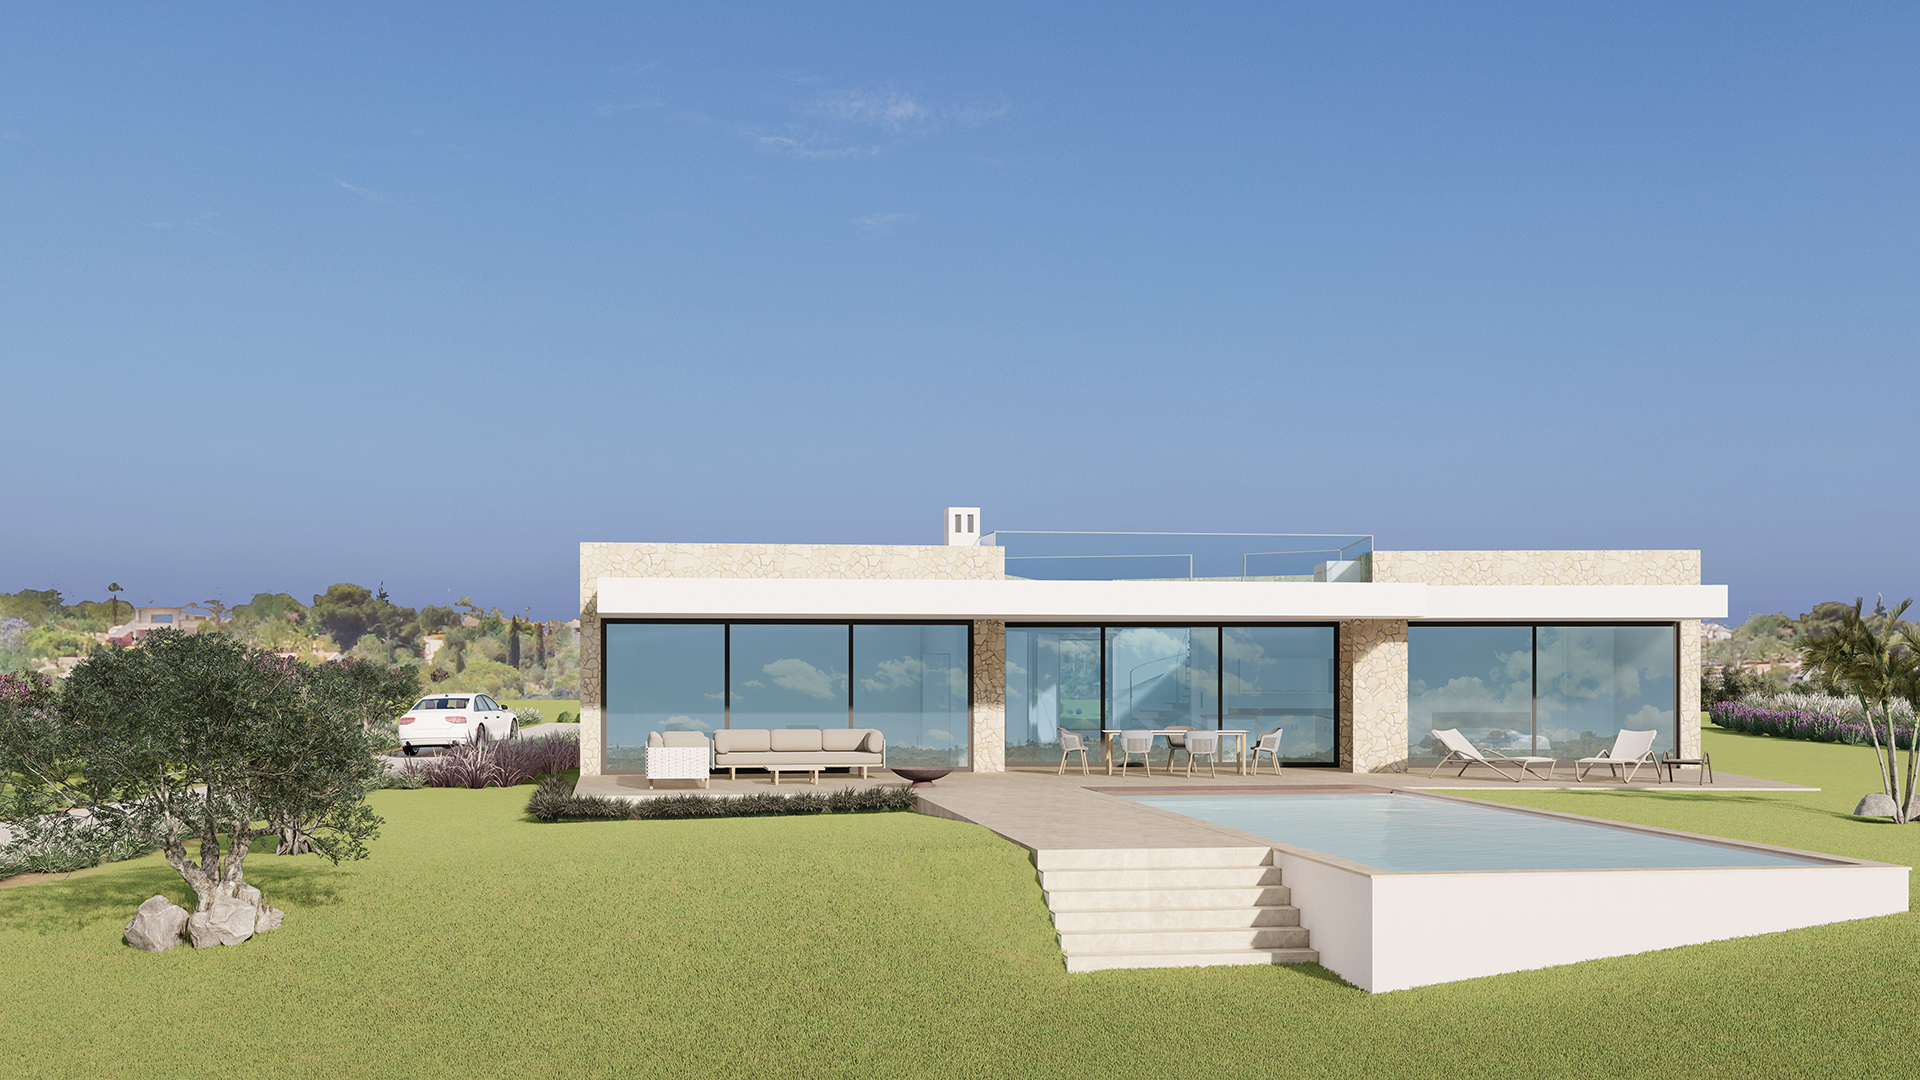 IM BAU- Moderne 6 SZ Villa mit Pool und Meerblick, in der Nähe von Lagos, West Algarve | LG1965 Baubeginn der modernen 6 SZ Villa mit grossem Pool und Garage auf einem Grundstück von 3015 m² ist im 4. Quartal 2022. Es ist eines von 7 Projekten (Grundstück mit Bau) in einer sehr beliebten Wohngegend in der Nähe von Lagos. Sie befindet sich in einer erstklassigen Lage mit Meer- und Panoramablick und nur 2 Minuten vom Golfplatz Palmares und dem Meia Praia Strand entfernt.
